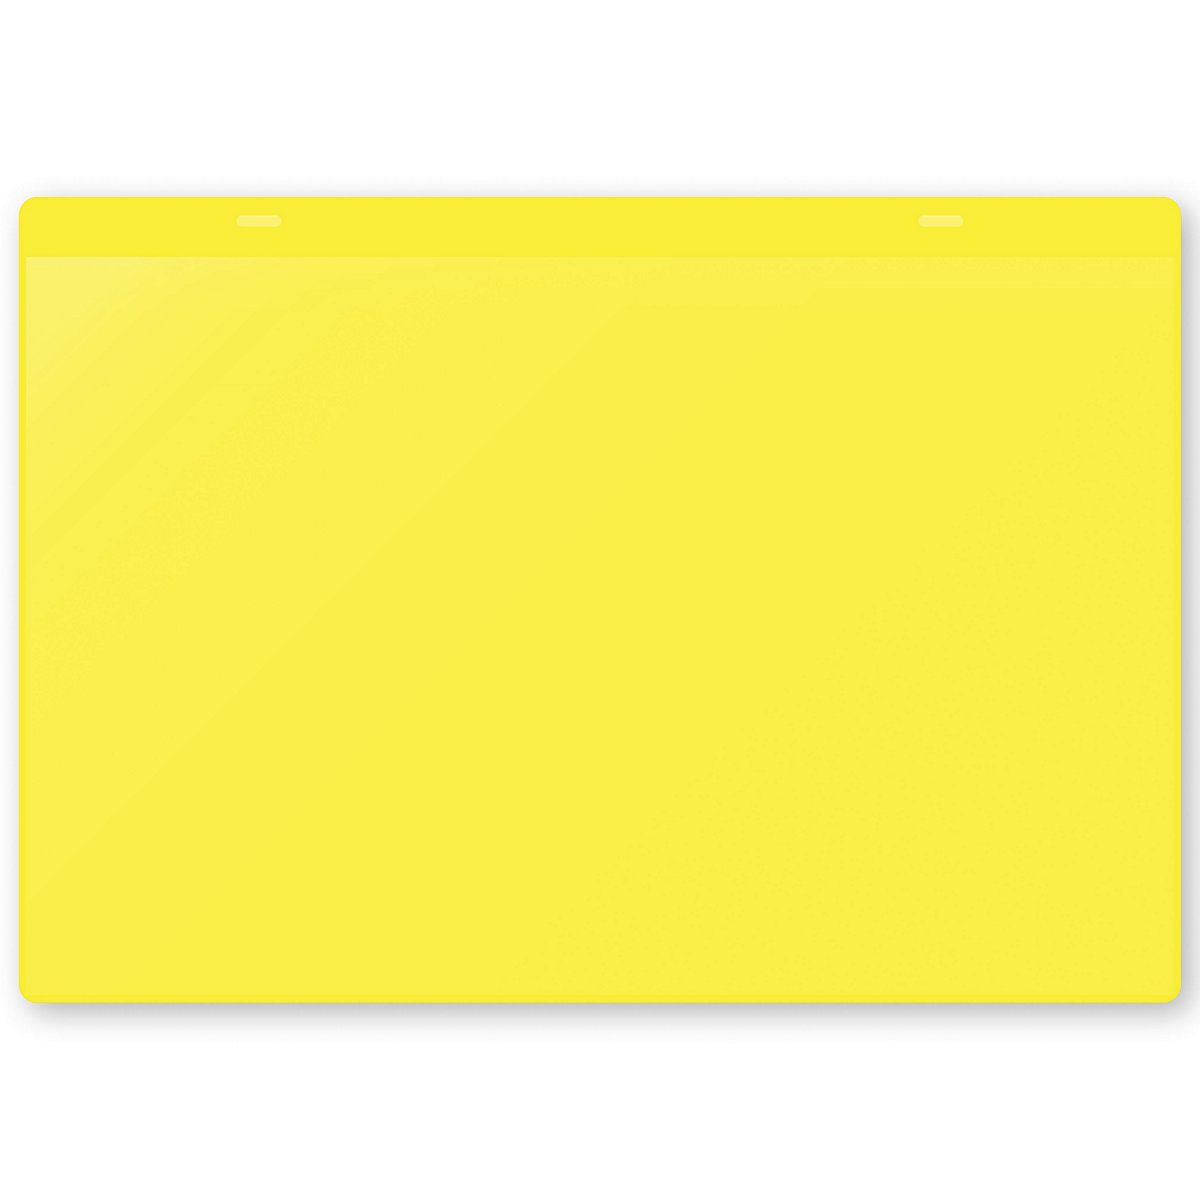 Öntapadó dokumentumtartó tasakok, DIN A4, fekvő, cs. e. 10 db, sárga